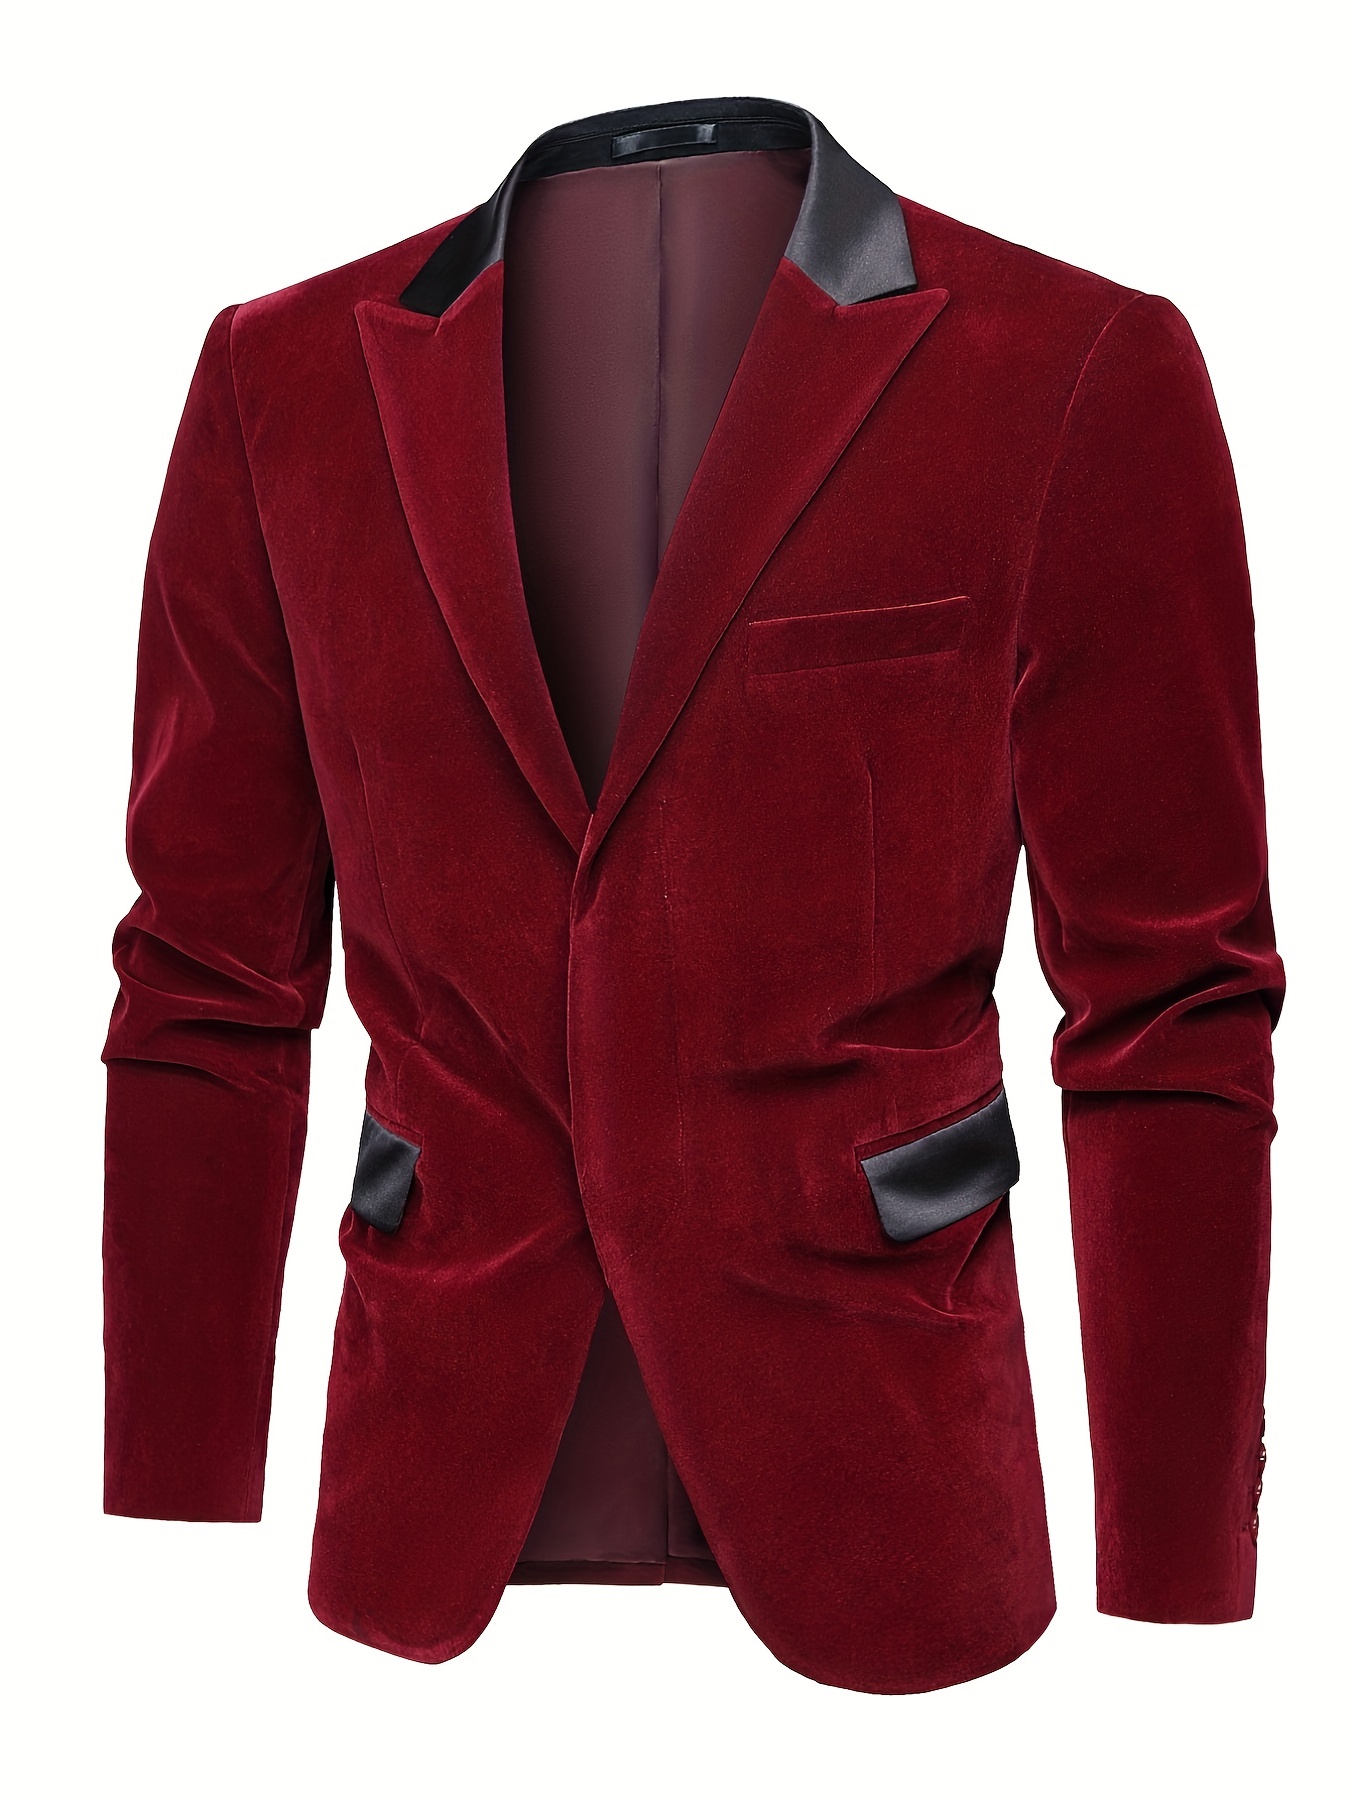 Alluring Red Velvet Tuxedo Suit Set